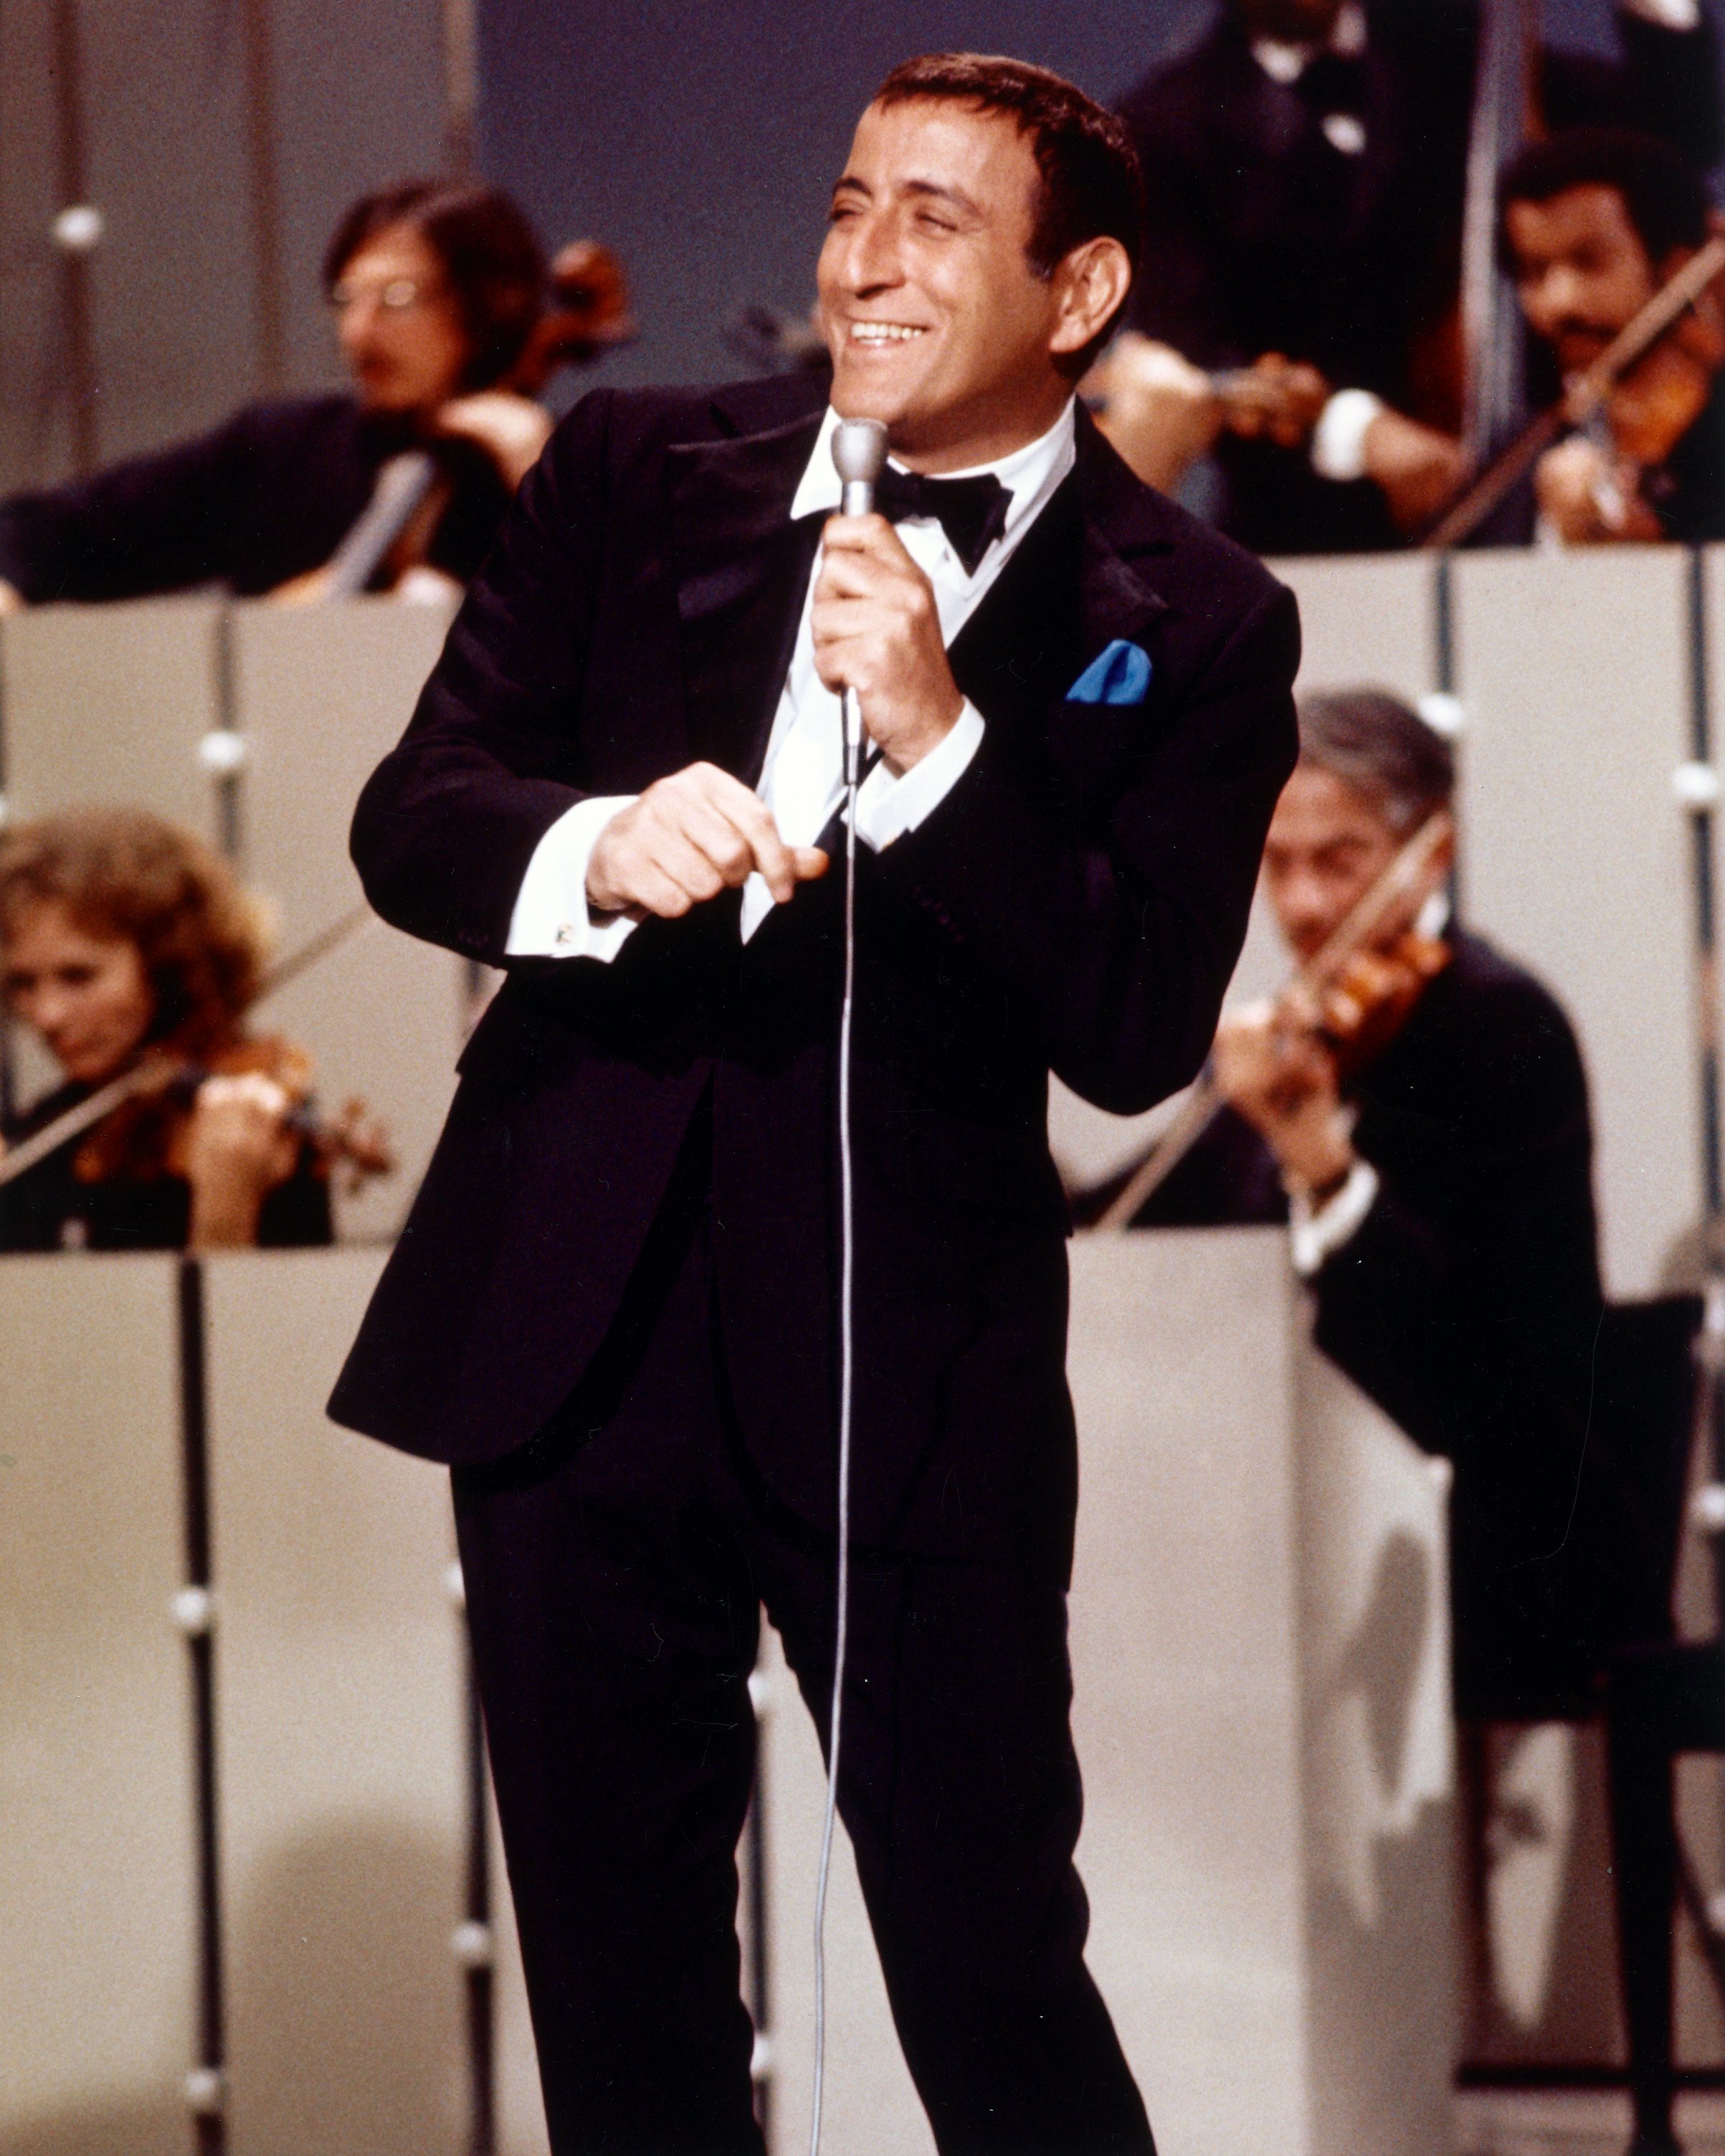 Le chanteur américain Tony Bennett, vers 1965. | Source: Getty Images